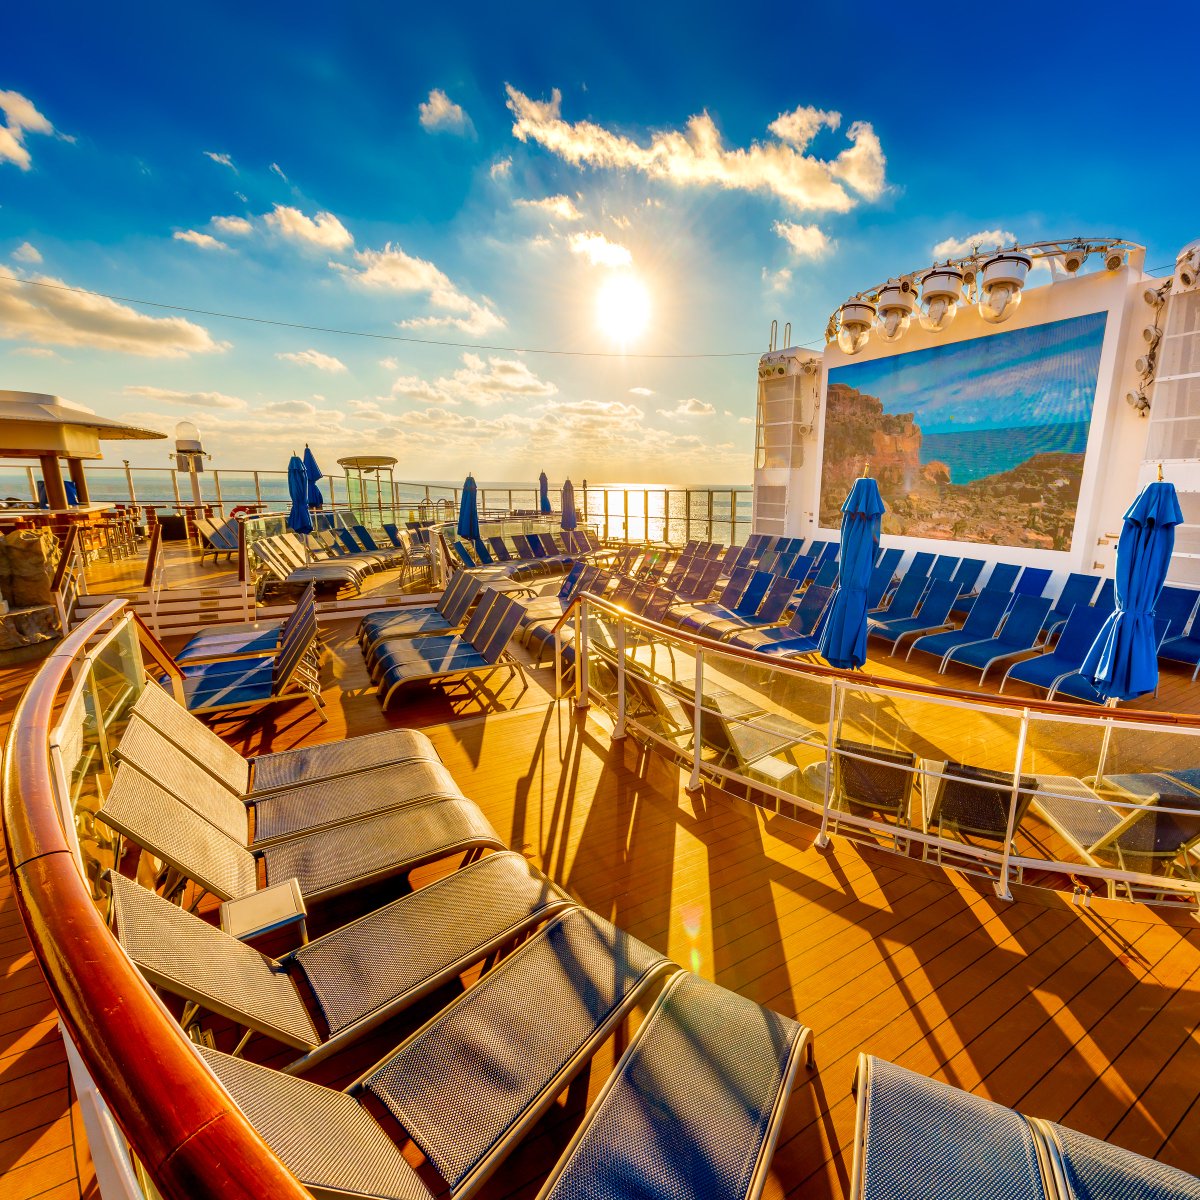 The ultimate way to Caribbean: #NorwegianEscape! #CruiseNorwegian